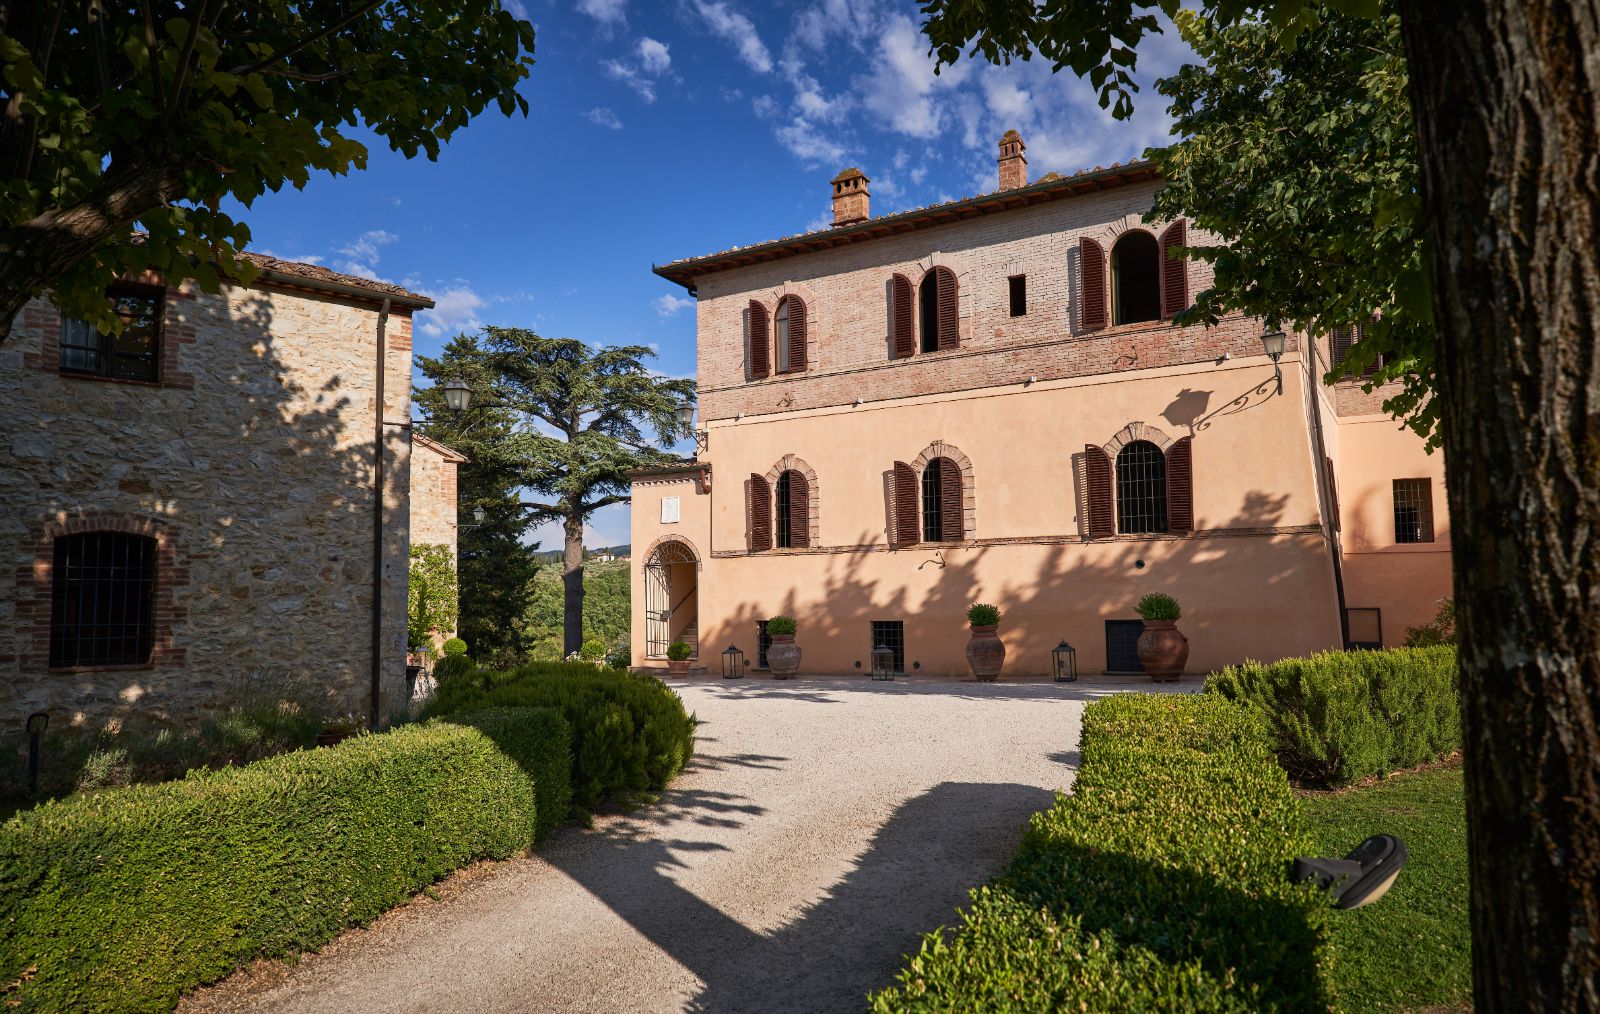 Driveway at Villa Isabella in Tuscany